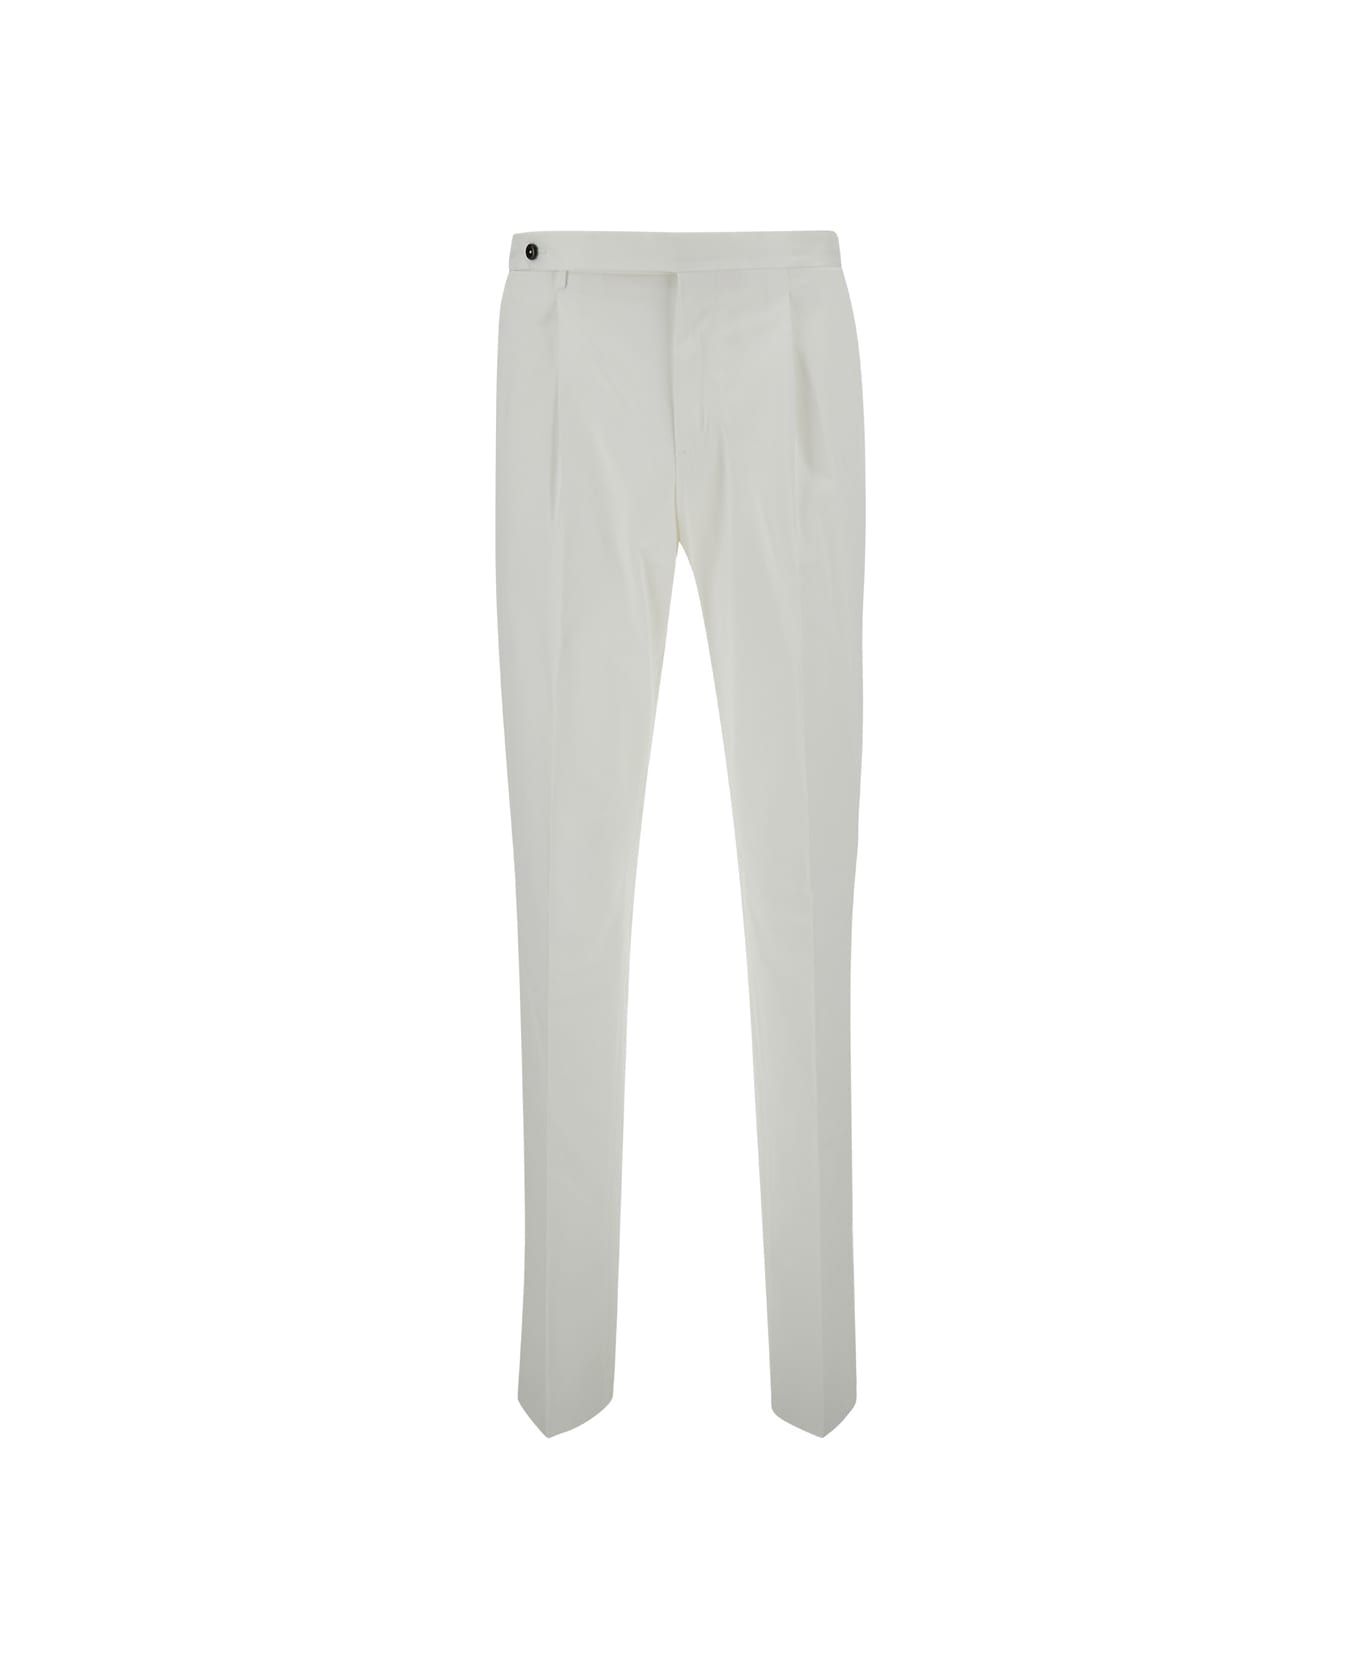 PT Torino White Slim Fit Tailoring Pants In Cotton Blend Man - White ボトムス